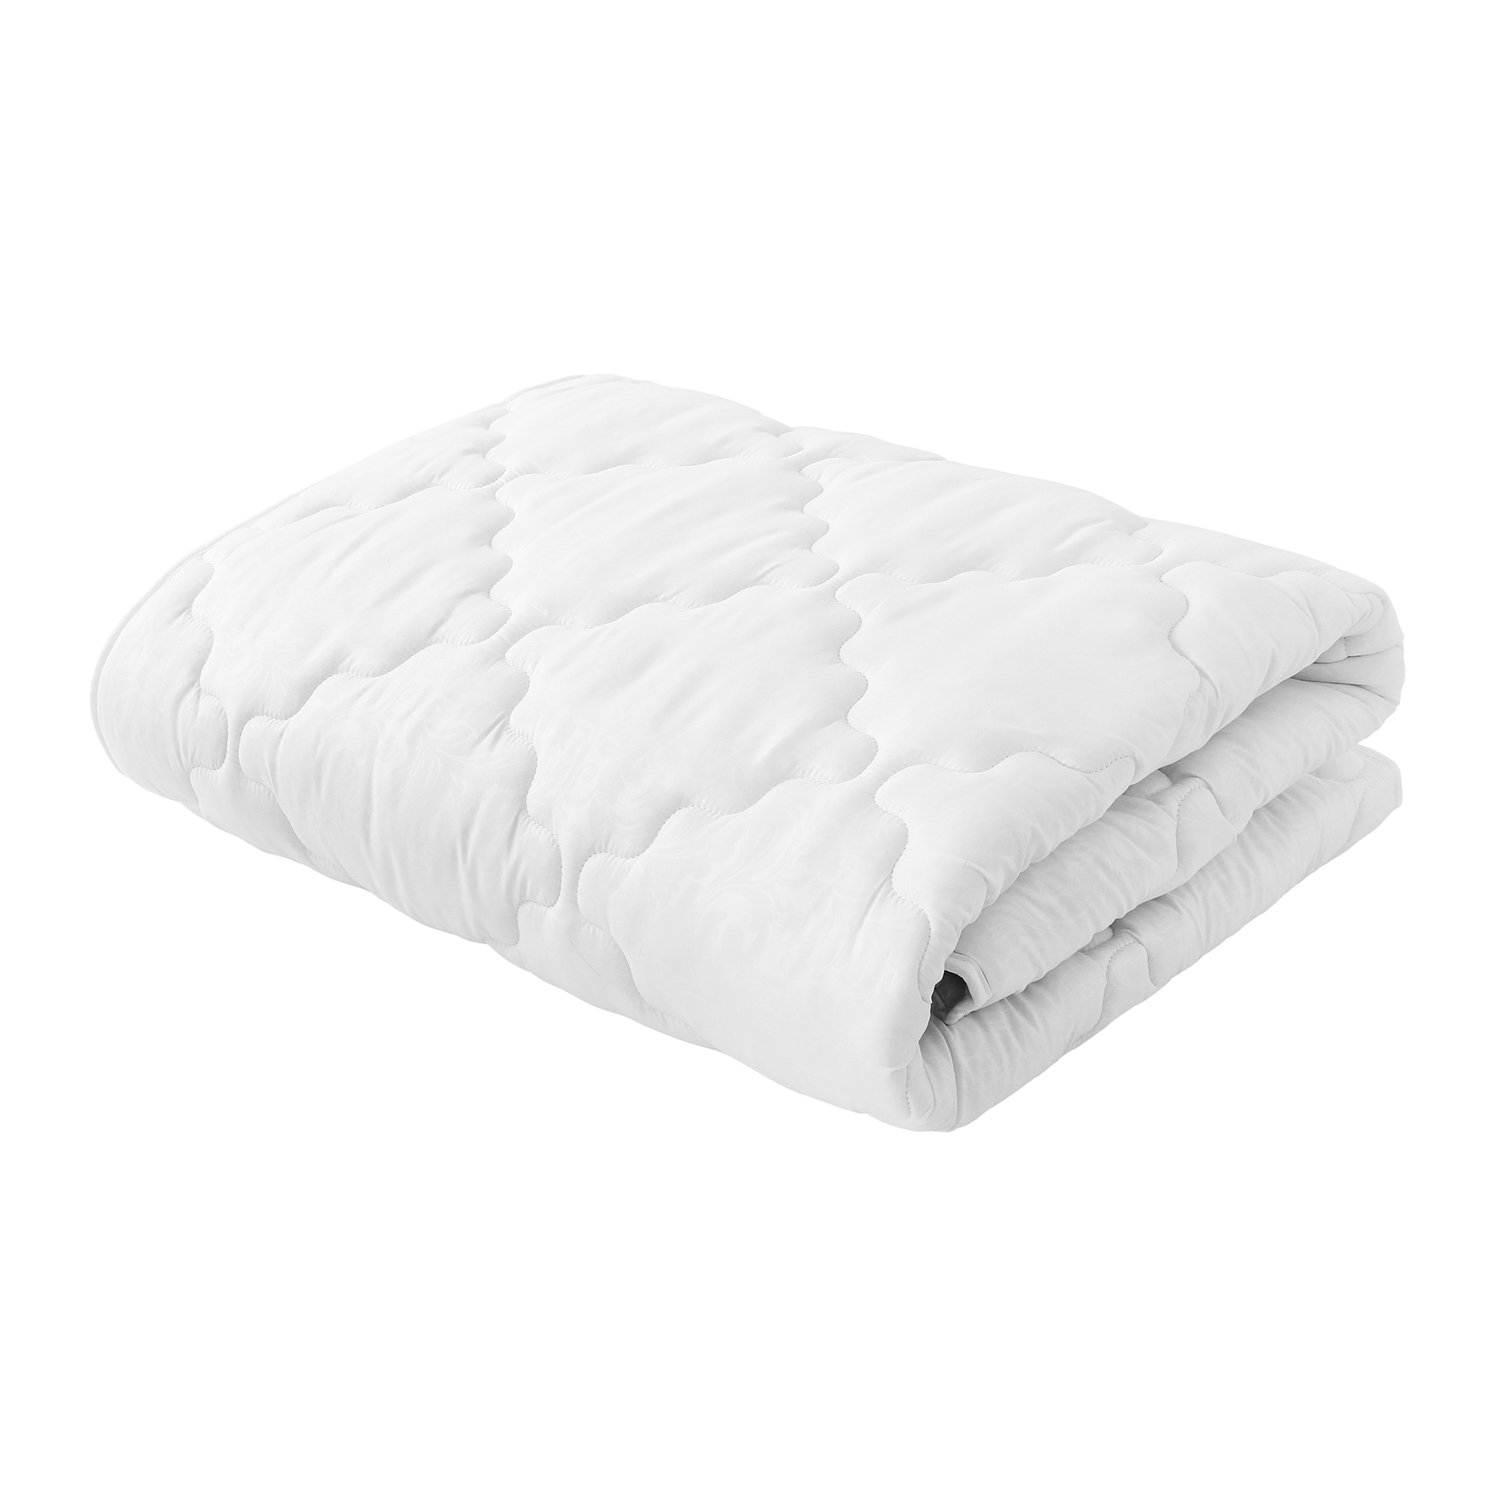 Одеяло Белая ветка (172х205 см), размер 172х205 см samo826551 Одеяло Белая ветка (172х205 см) - фото 1